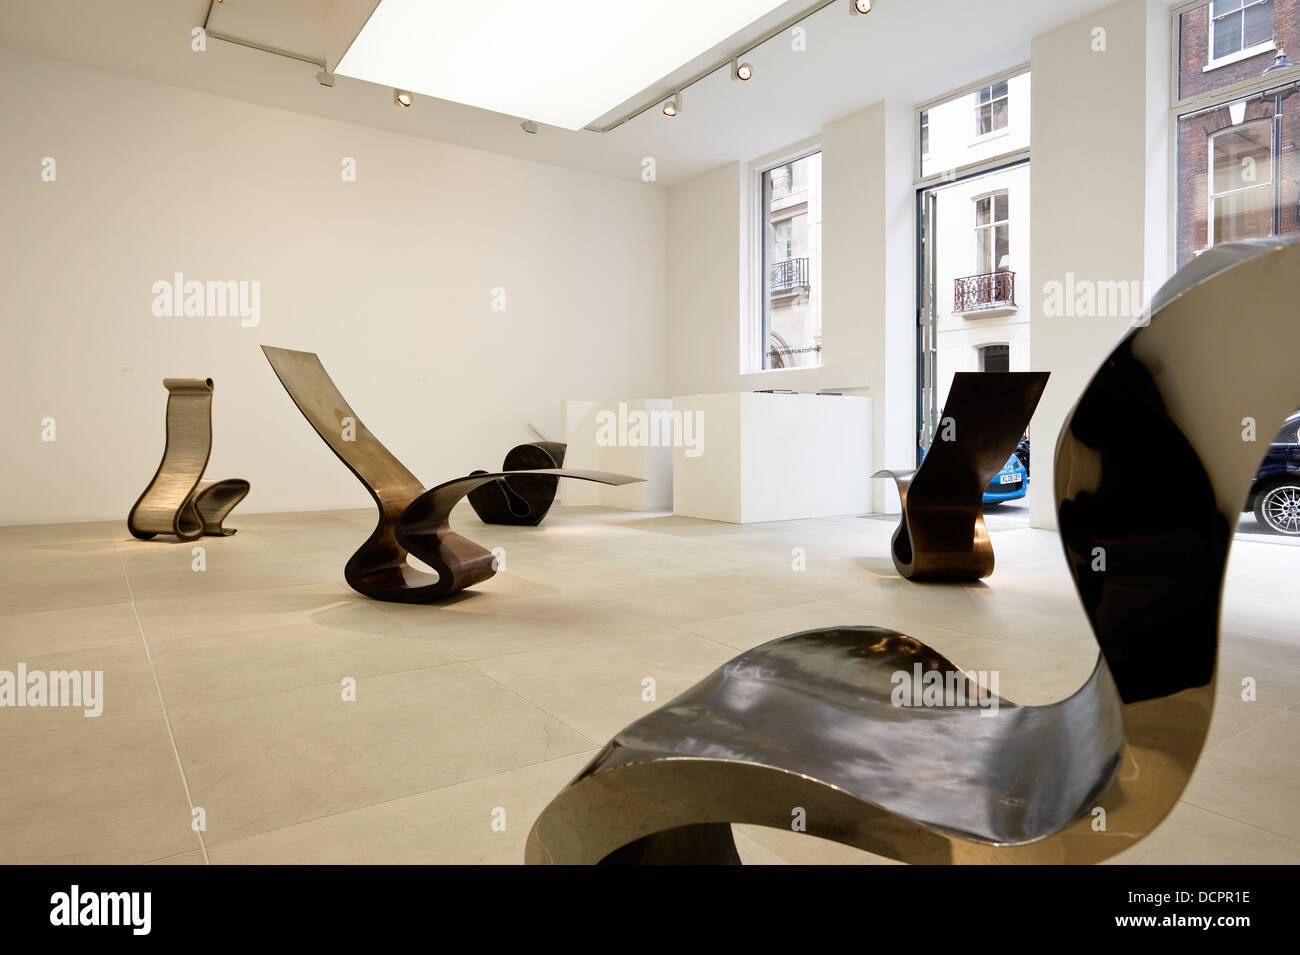 Tischler Werkstatt Galerie Ausstellungsraum in London Stockfoto